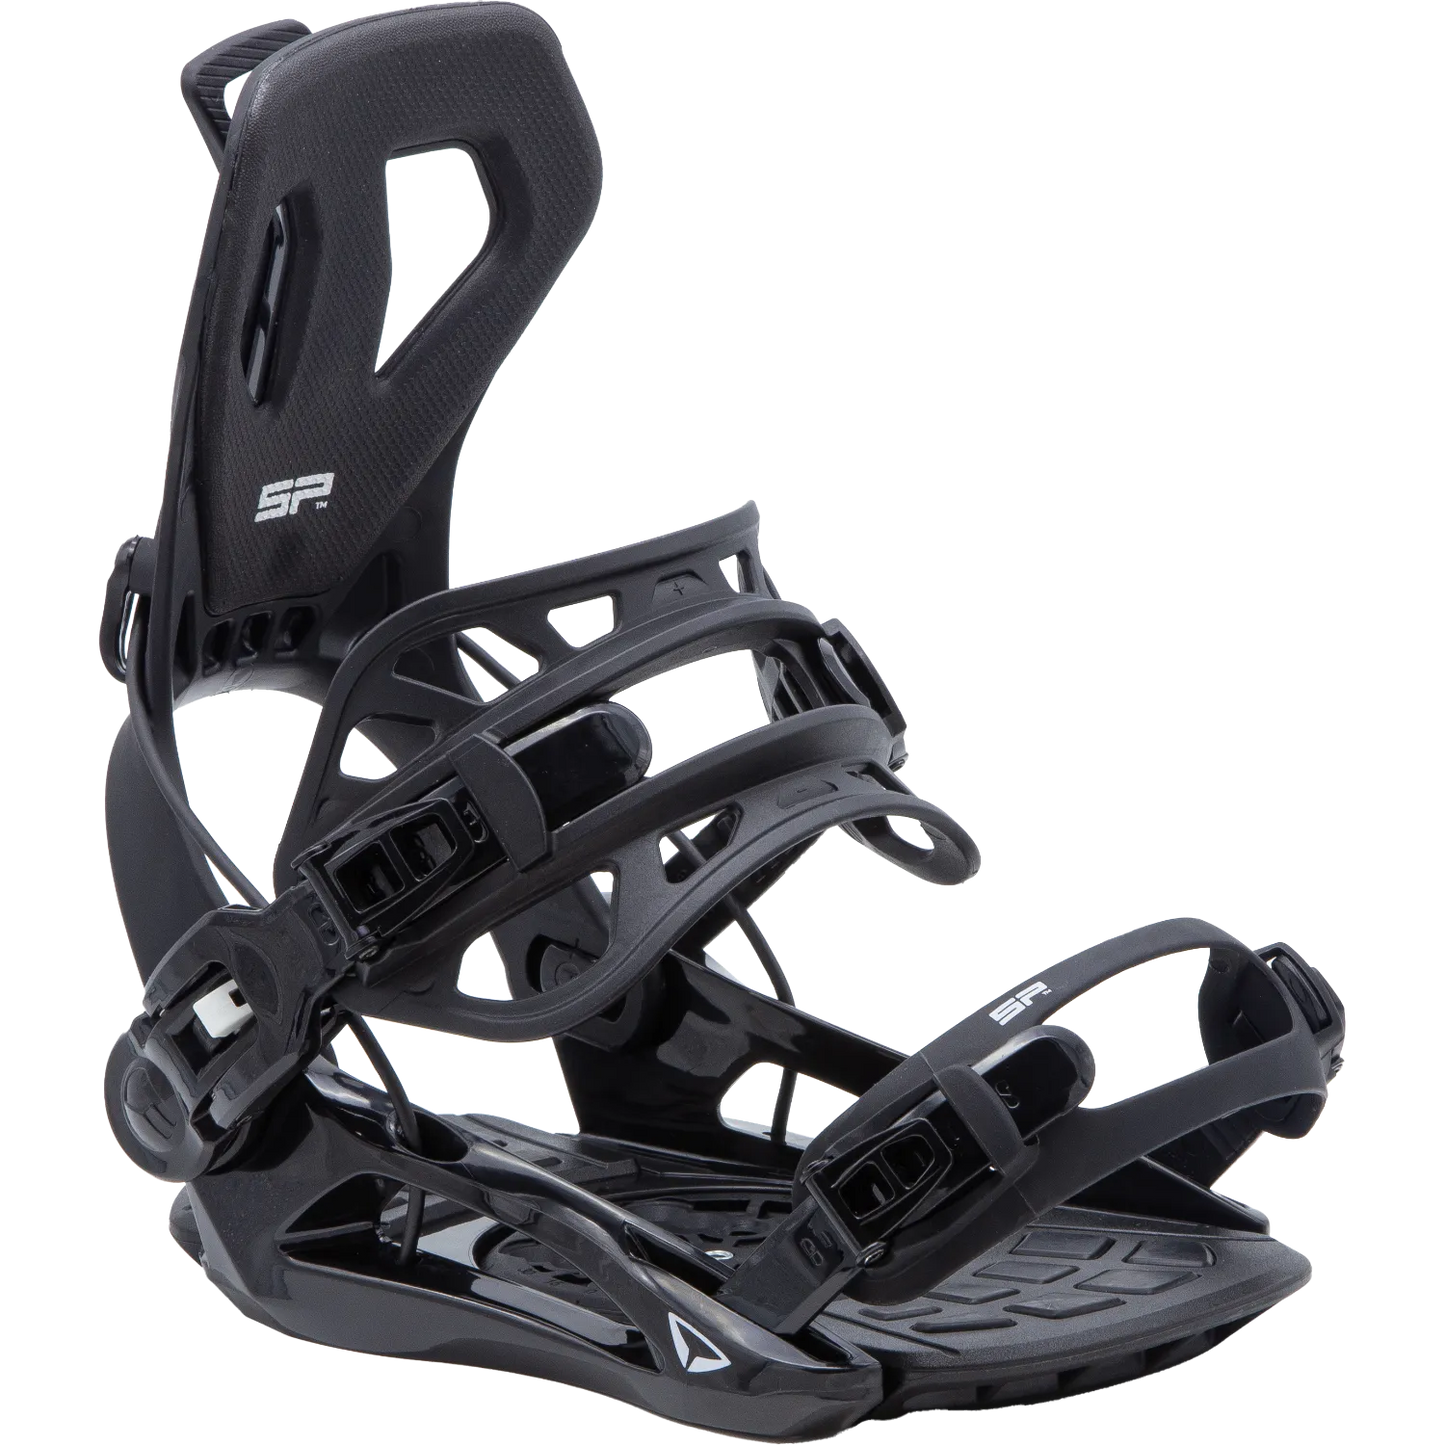 SP Snowboard Bindings - FT360